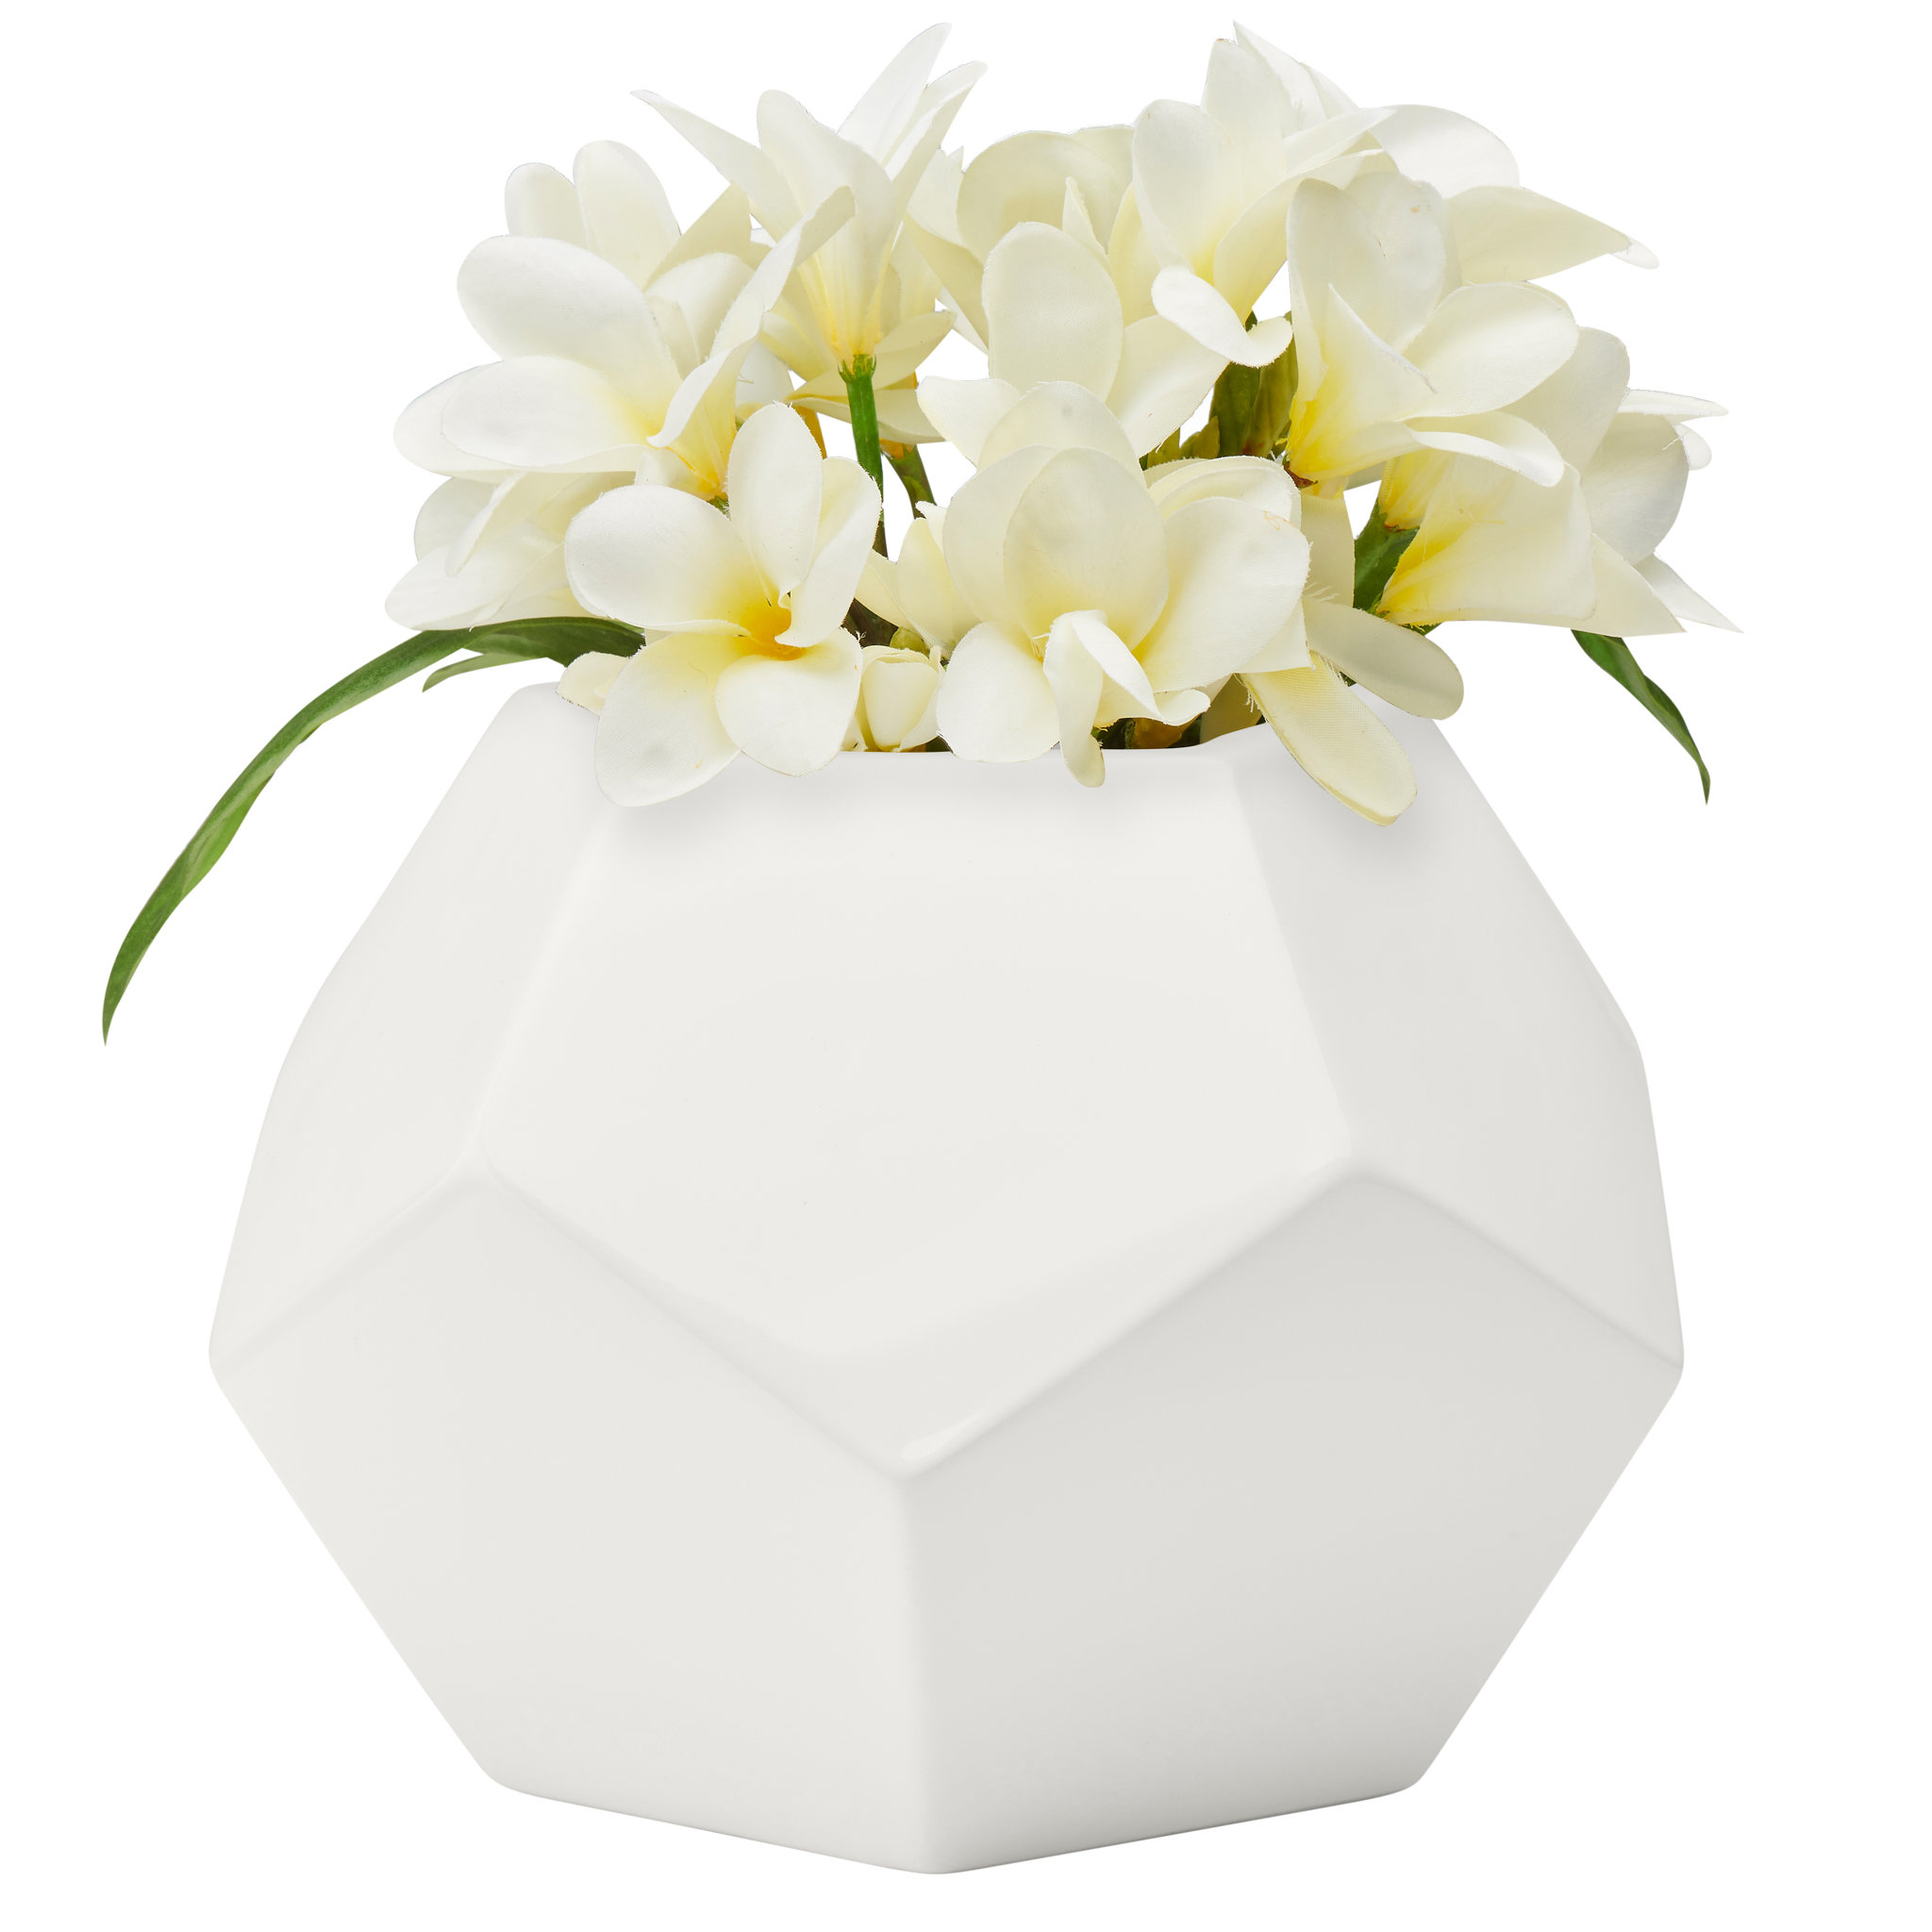 Contemporary White Ceramic Unique Geometric Shaped Table Vase Flower Holder Corrigan Studio